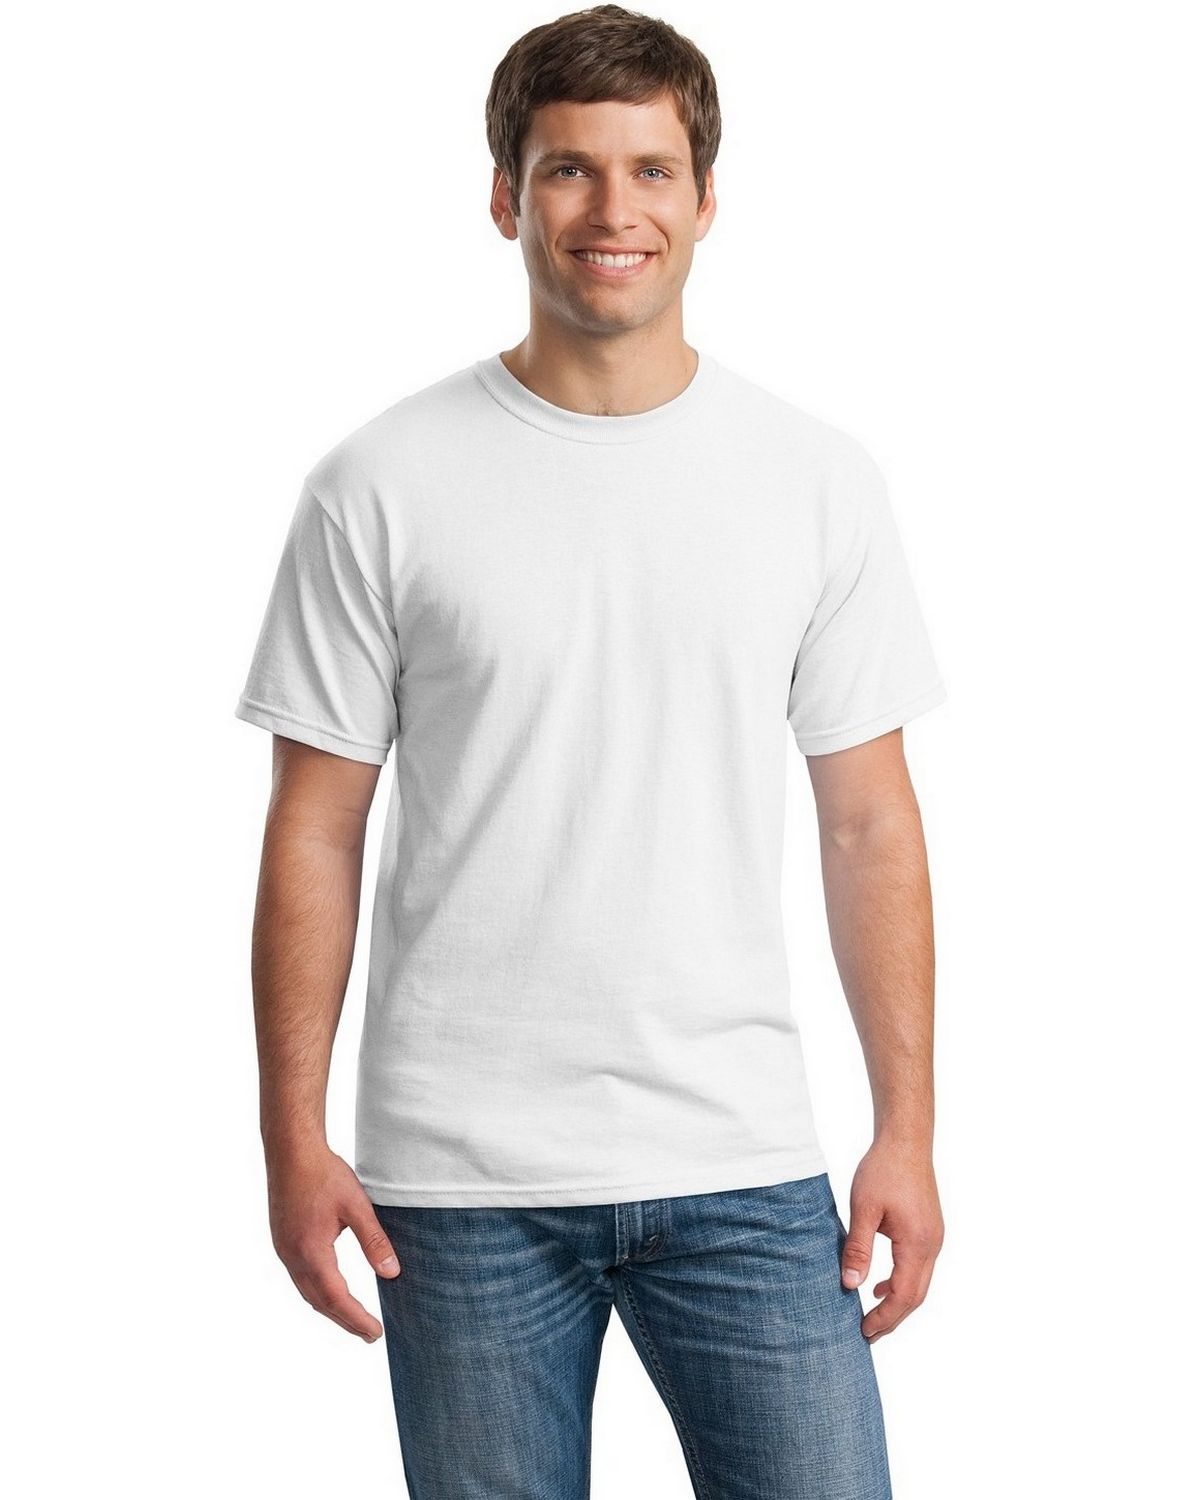 100 Gildan Heavy Cotton T-Shirt Wholesale Bulk Lot S-XL Colors unitedstatestees 